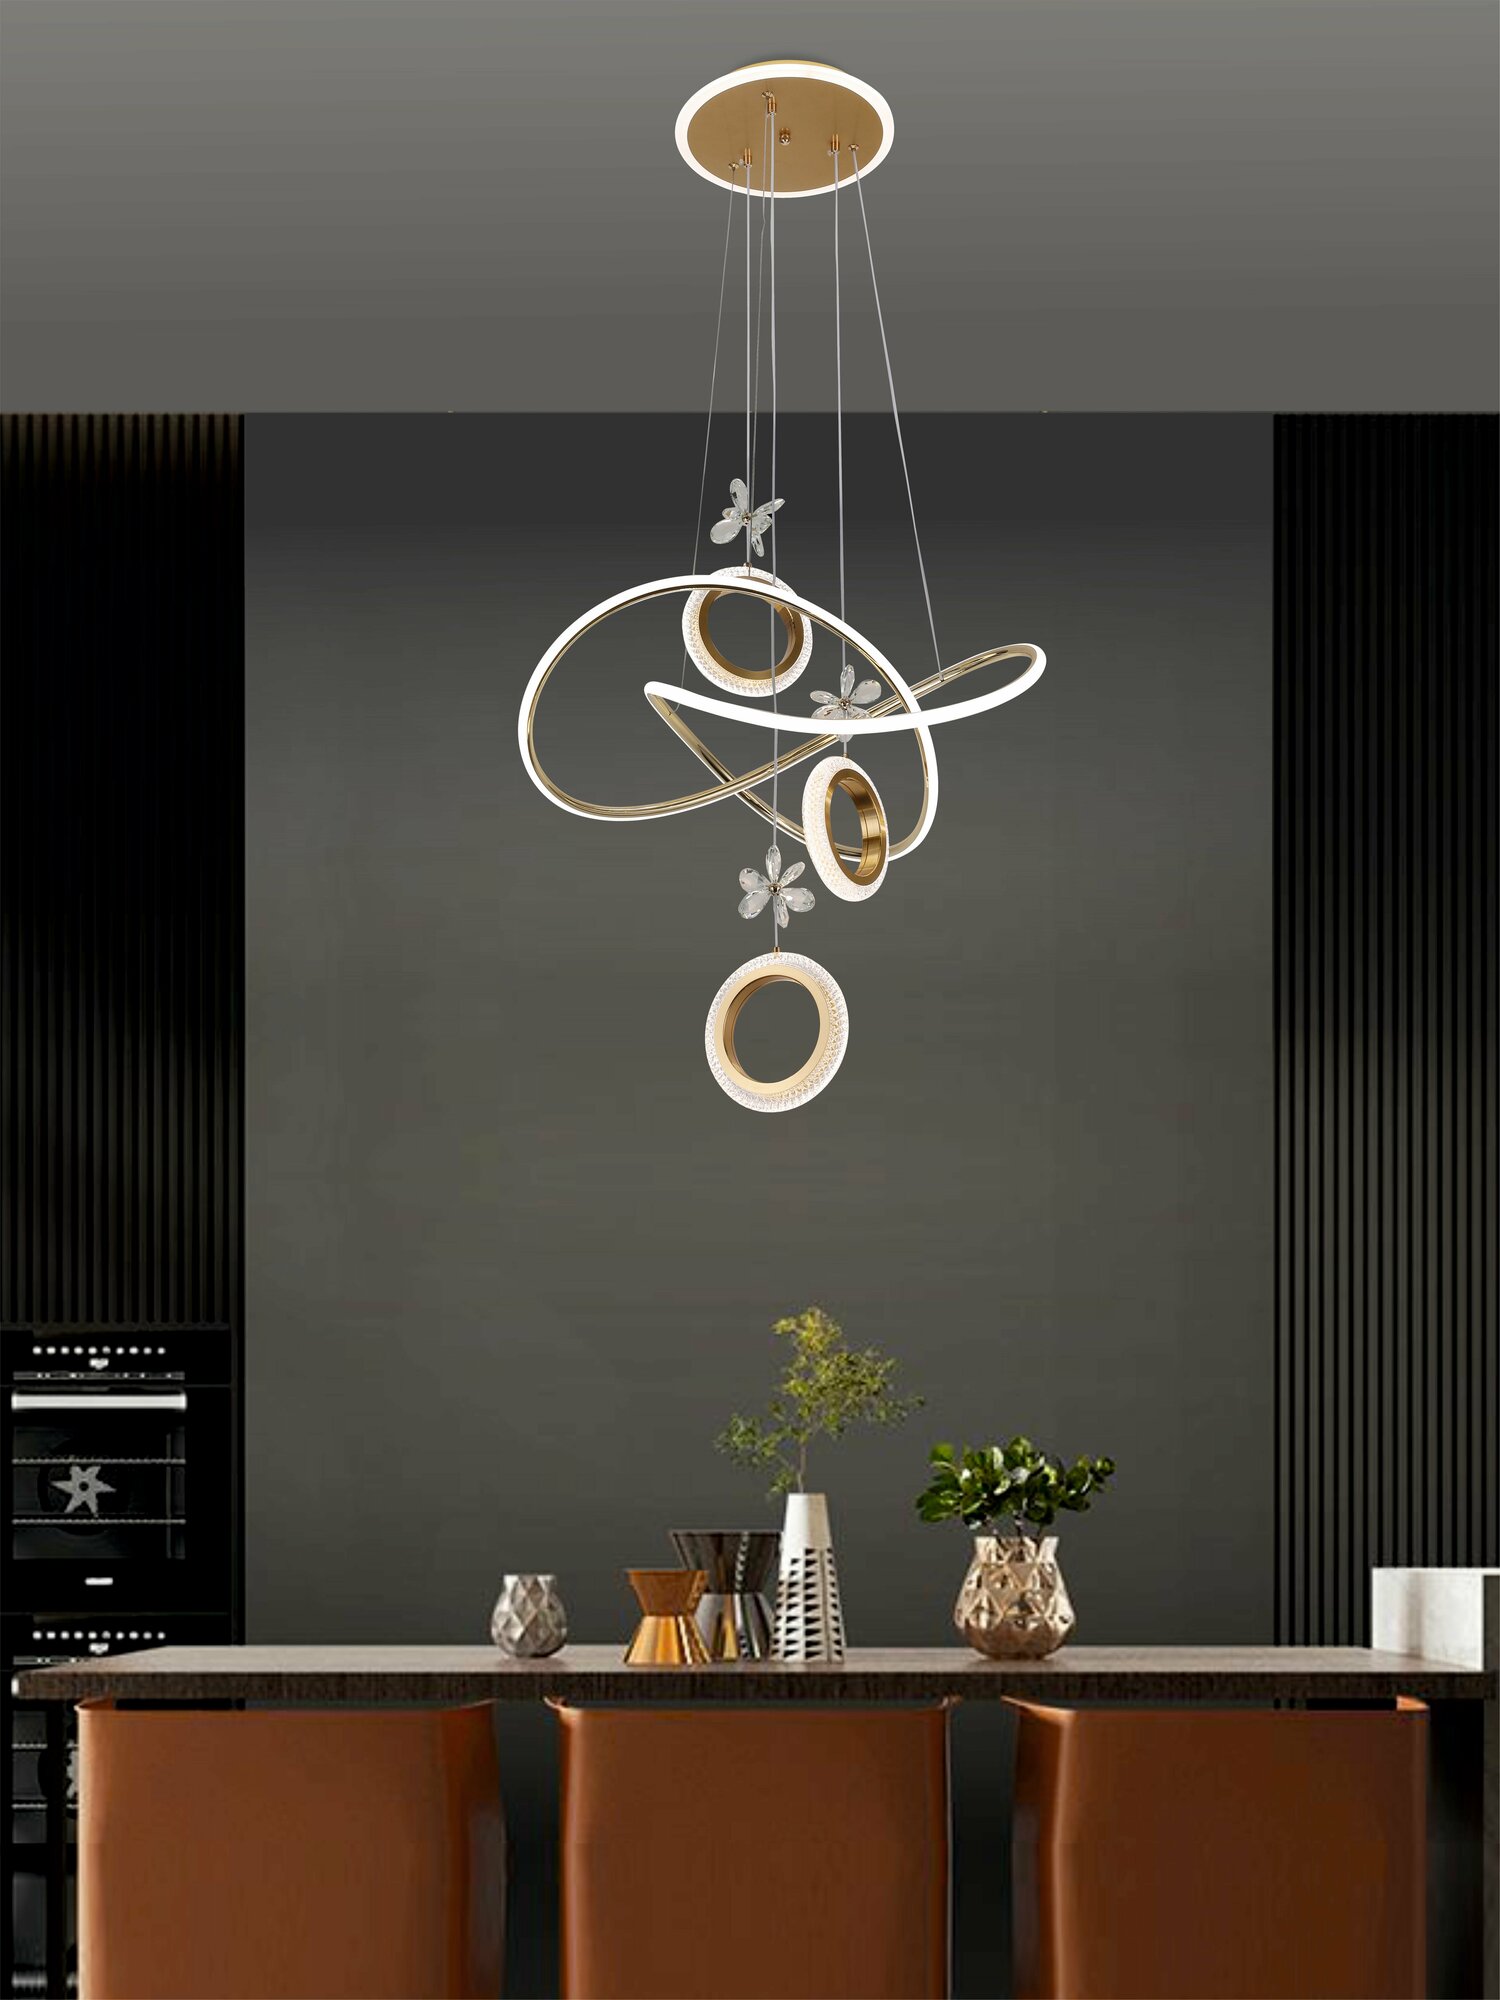 Светодиодная люстра подвесная VertexHome стиль модерн, на кухню, в детскую, в спальню, в гостиную